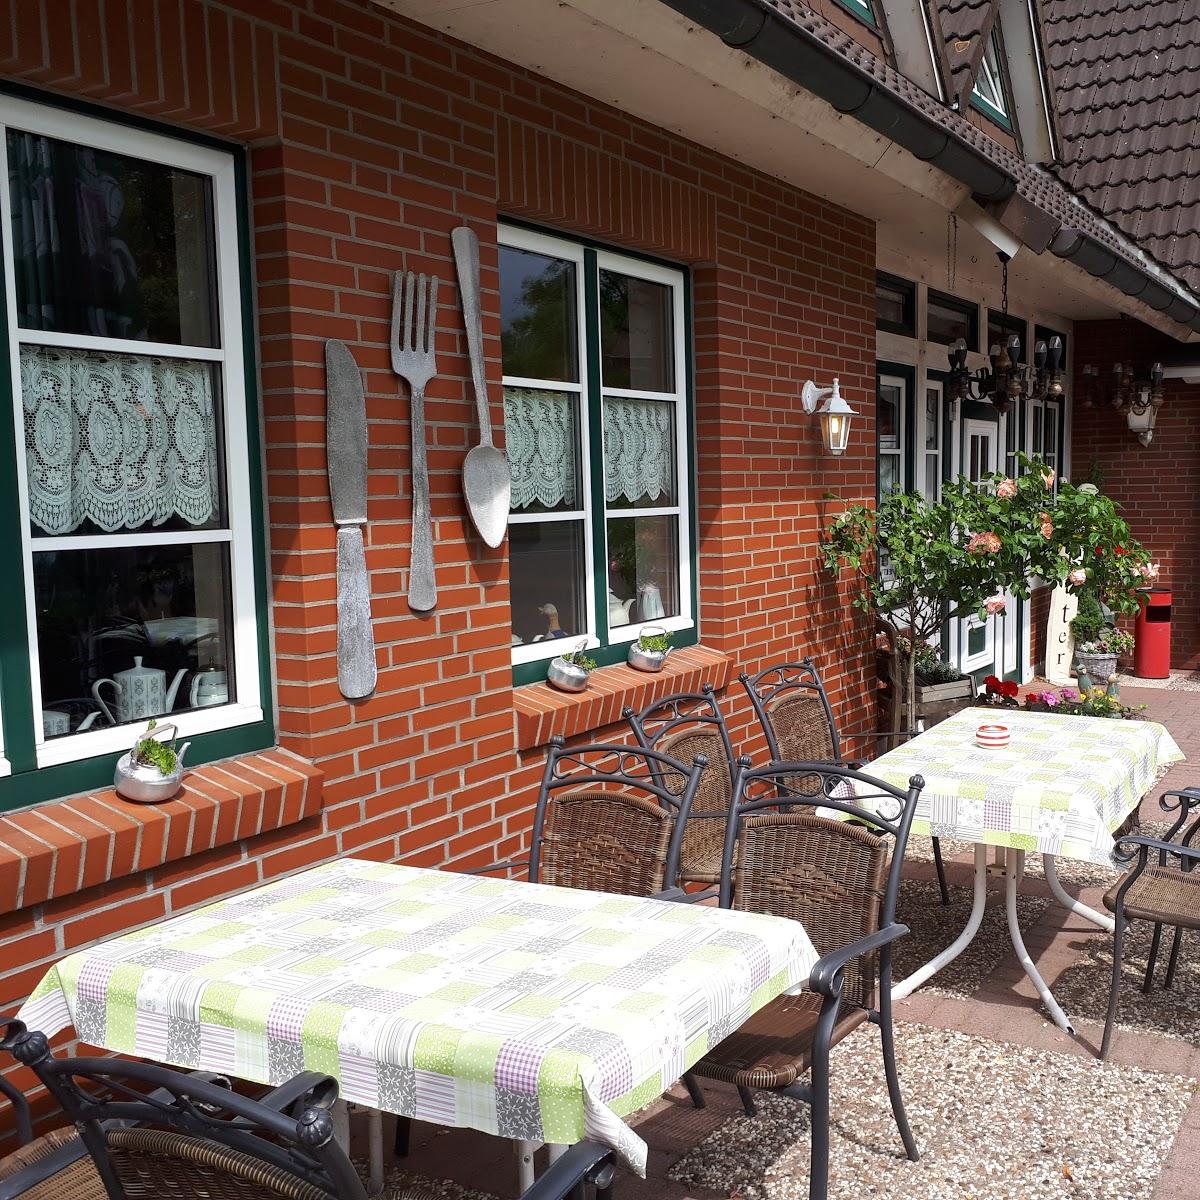 Restaurant "BEACH-NORD Naturfreibad-Imbiss" in  Krummendeich